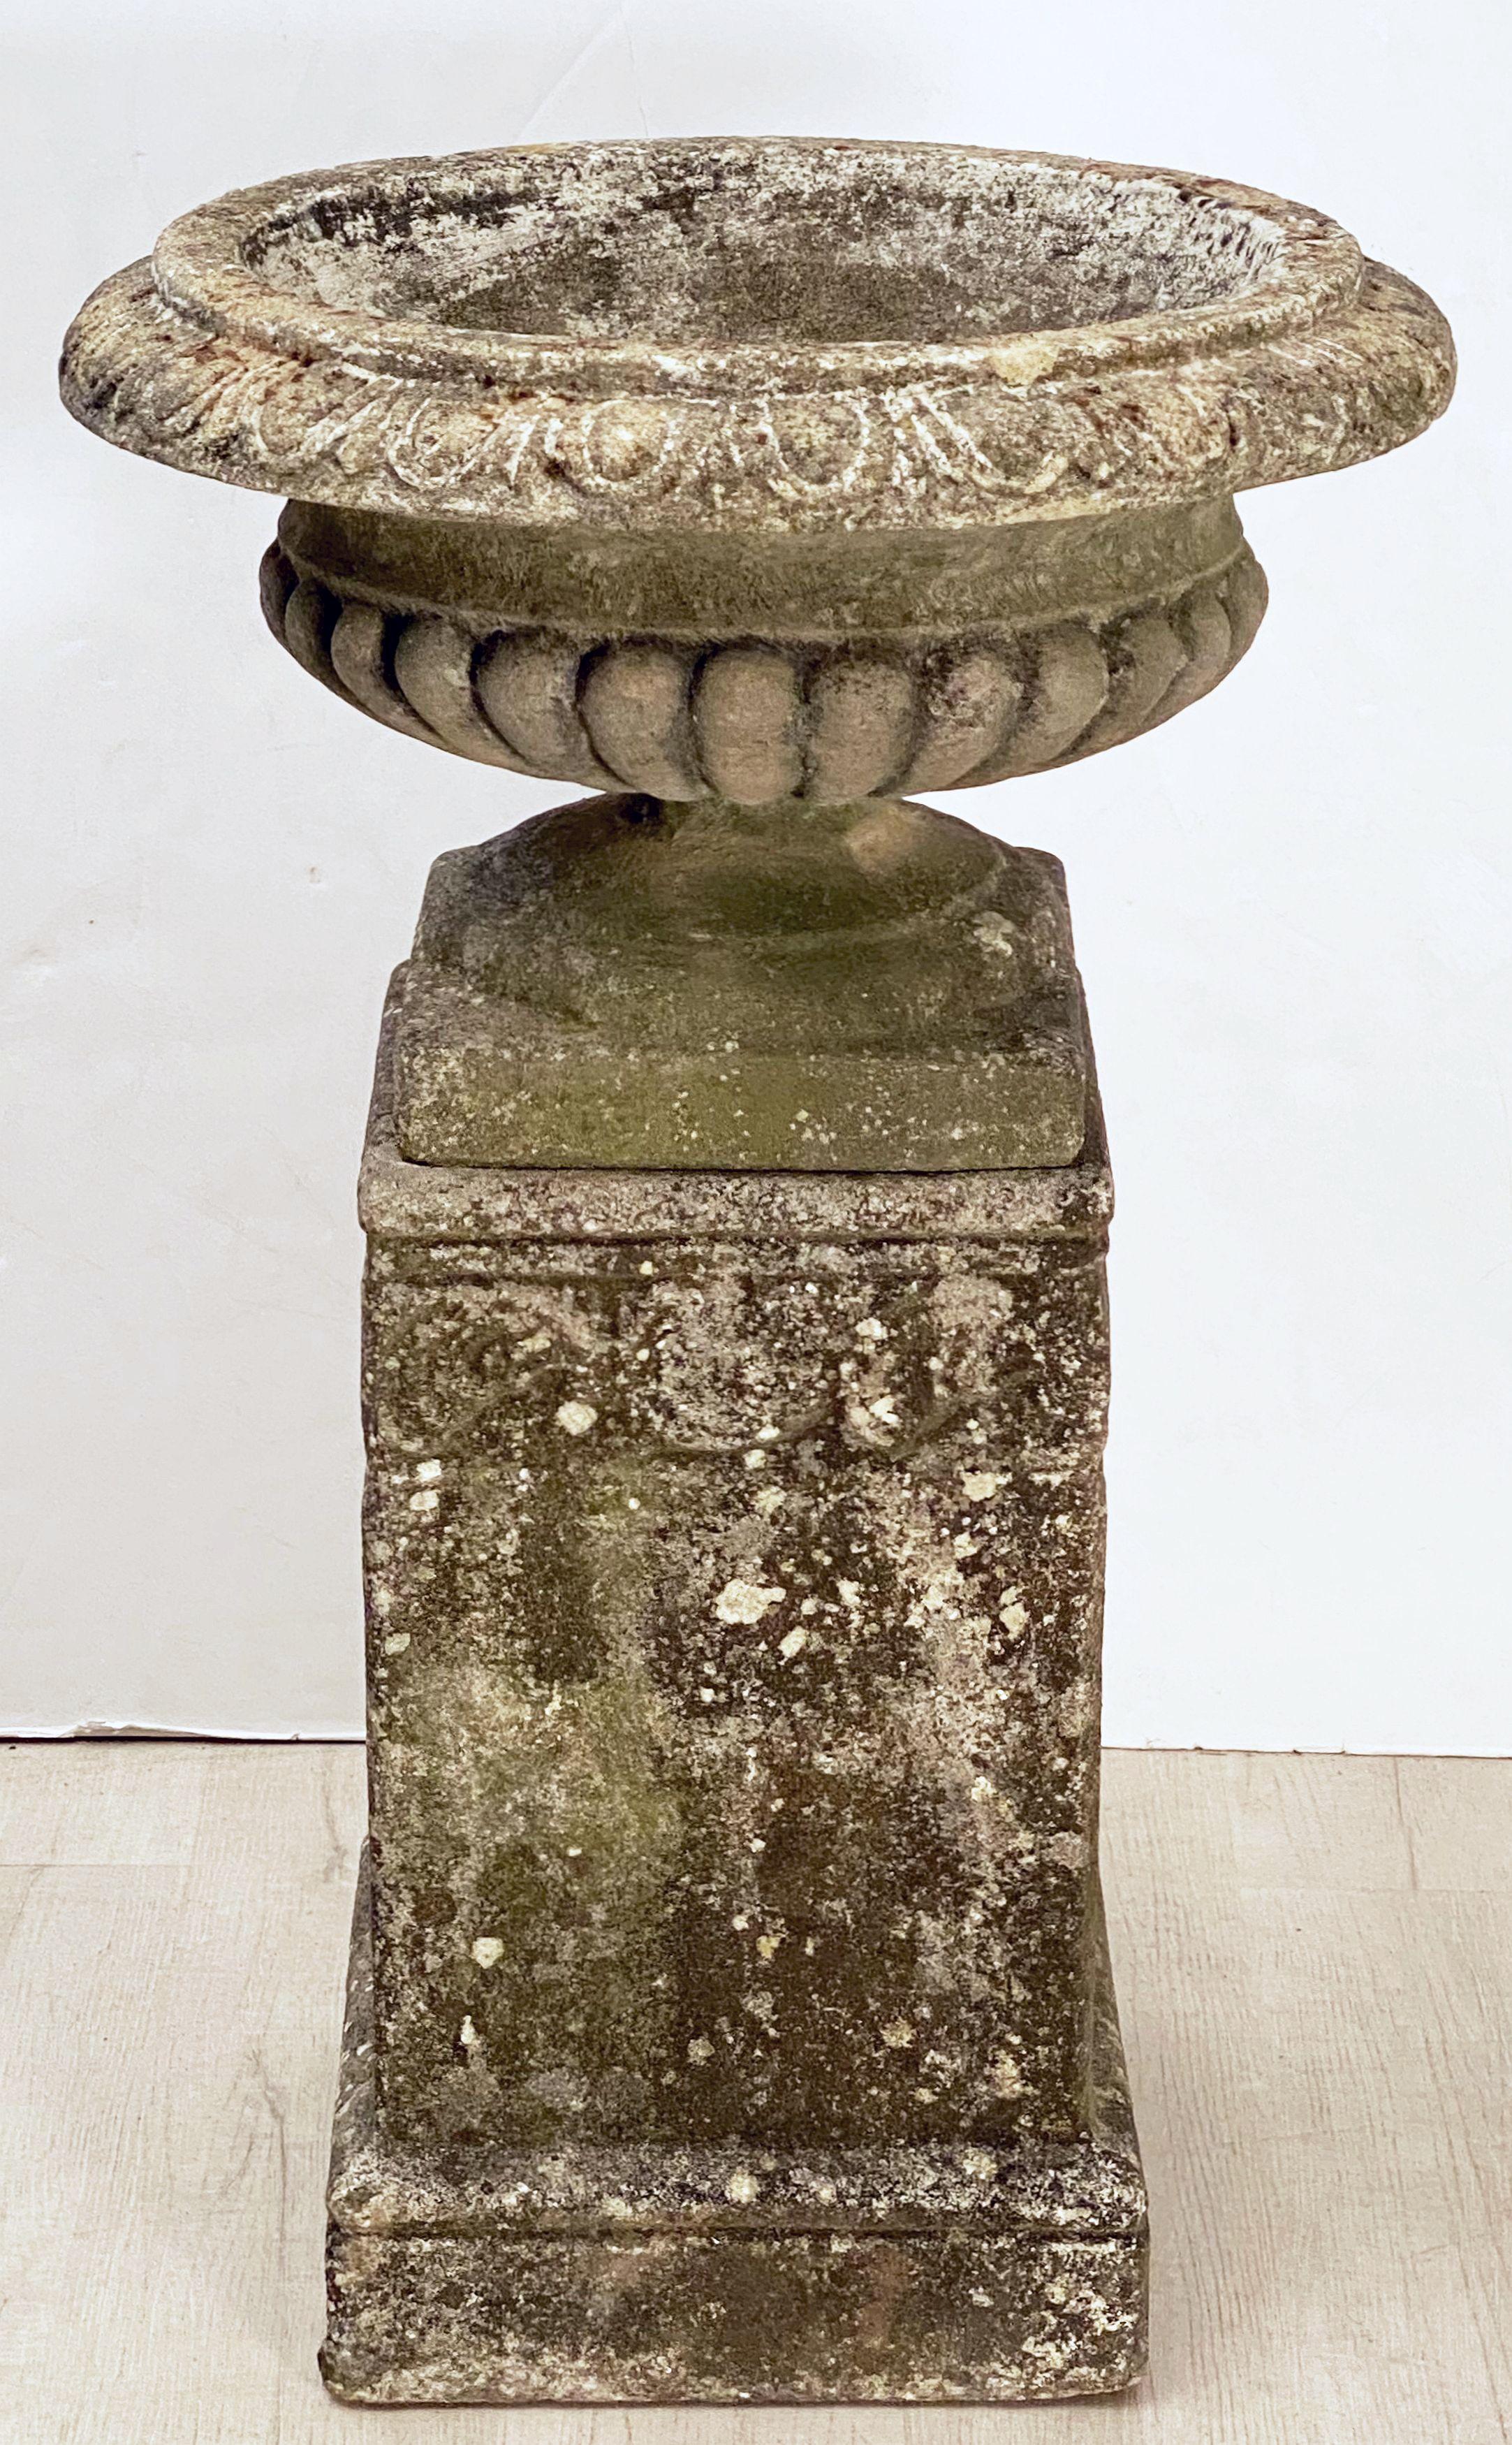 Jolie urne de jardin anglaise (ou pot de fleurs) sur socle en pierre de composition de style classique. L'urne présente un corps semi-lobé sur une base carrée surélevée, posée sur un socle carré avec un motif de volutes sur les côtés.

Parfait pour